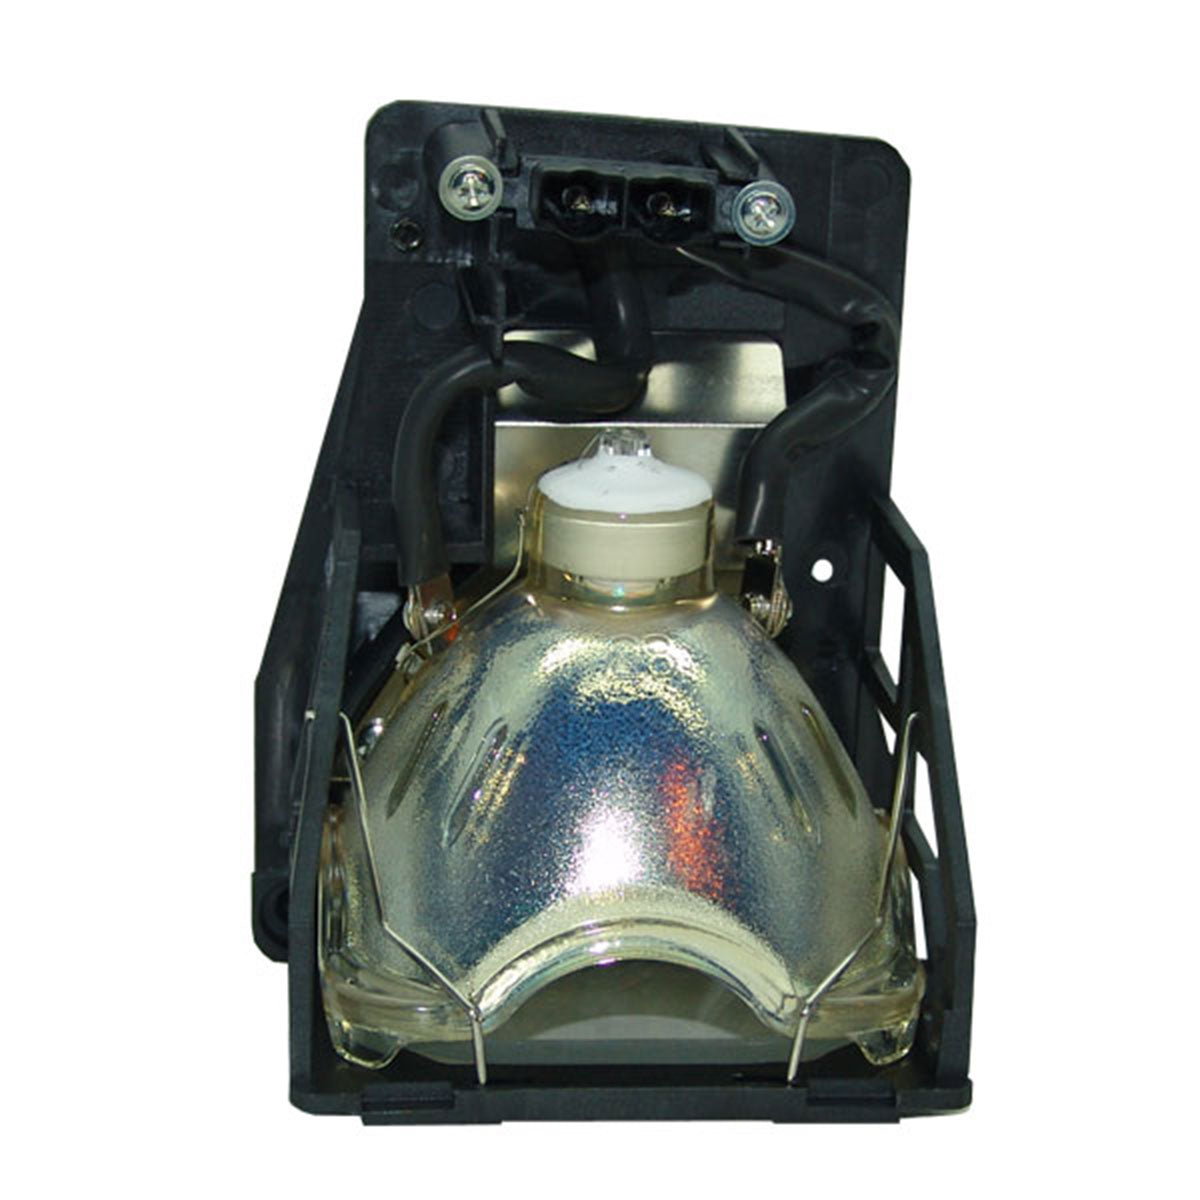 Infocus SP-LAMP-008 Osram Projector Lamp Module